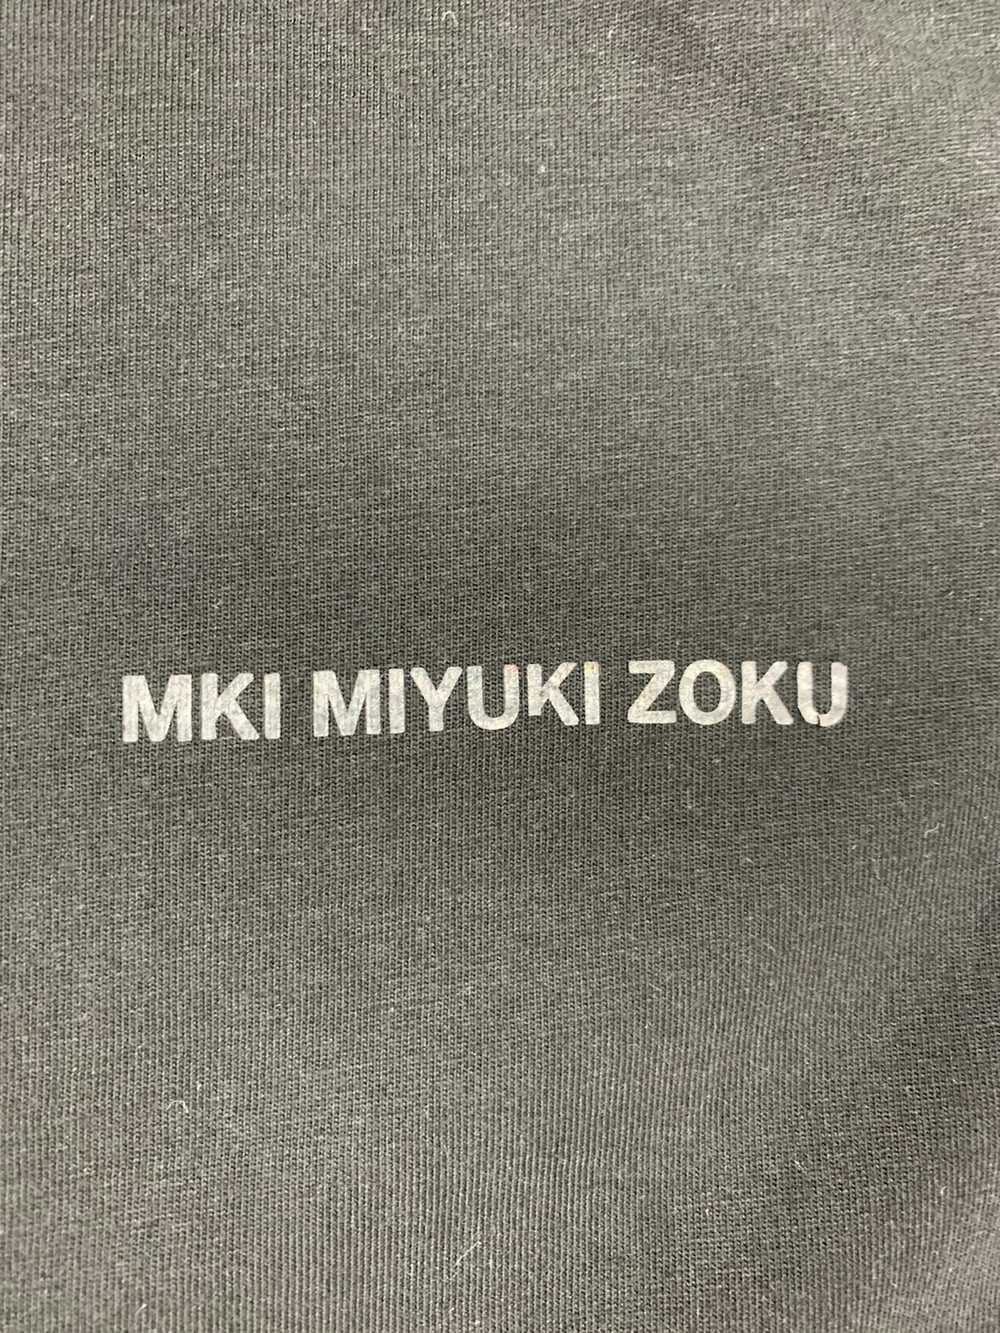 Mki Miyuki-Zoku Mki Miyuki Zoku T Shirt Japanese … - image 2